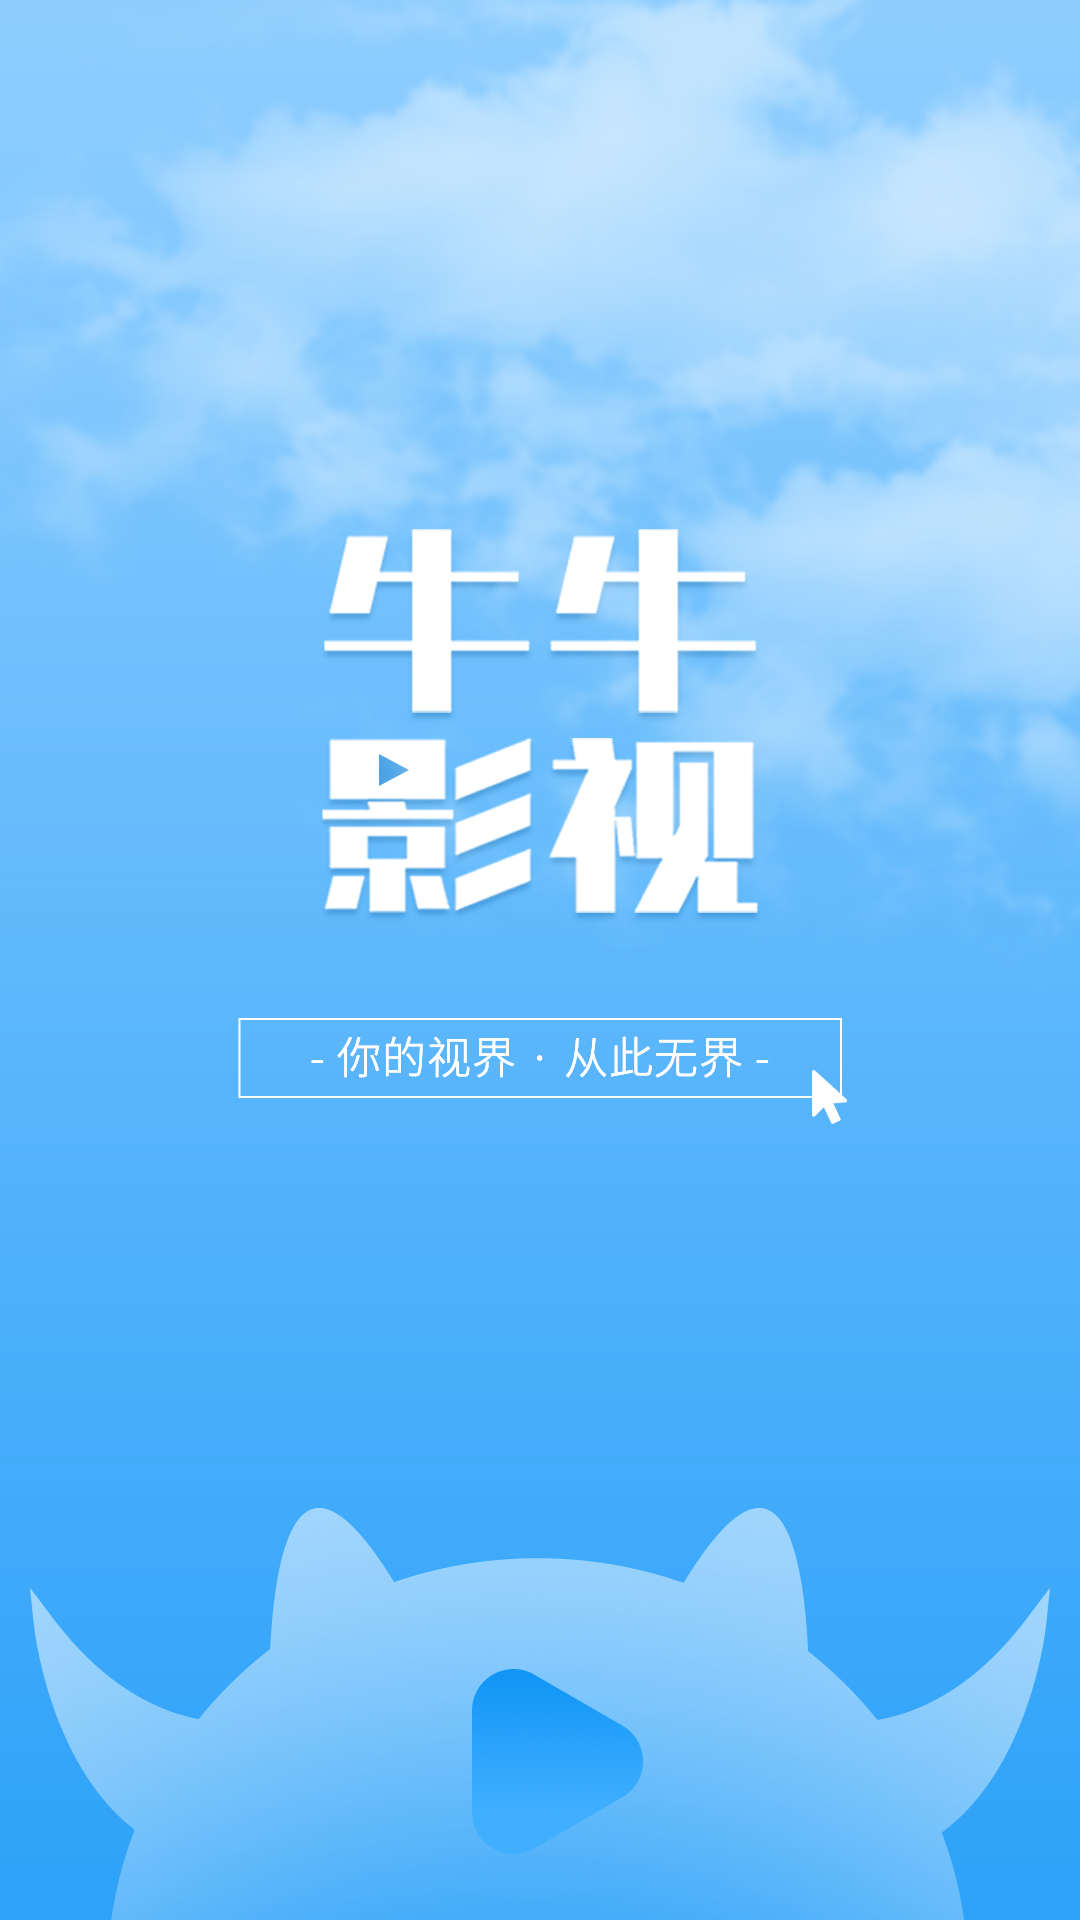 牛牛影视大全官方下载-牛牛影视大全 app 最新版本免费下载-应用宝官网